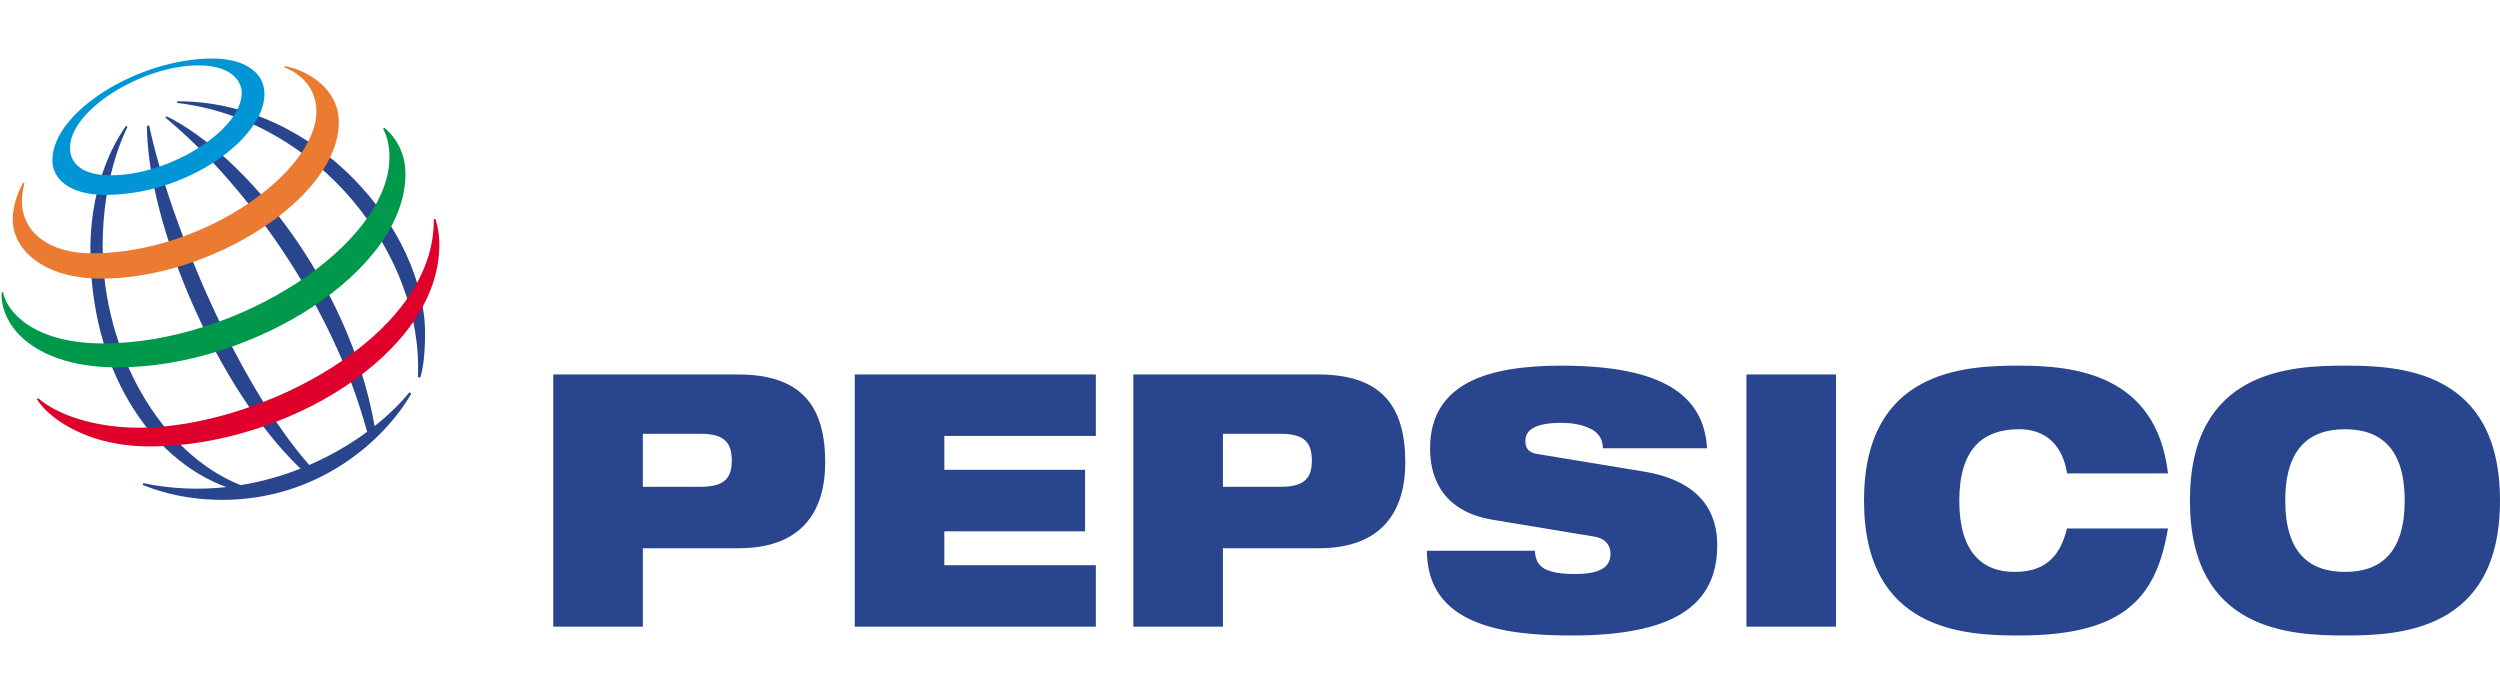 PepsiCo logo.svg - Roger Lundblade - Auctioneer - Los Angeles